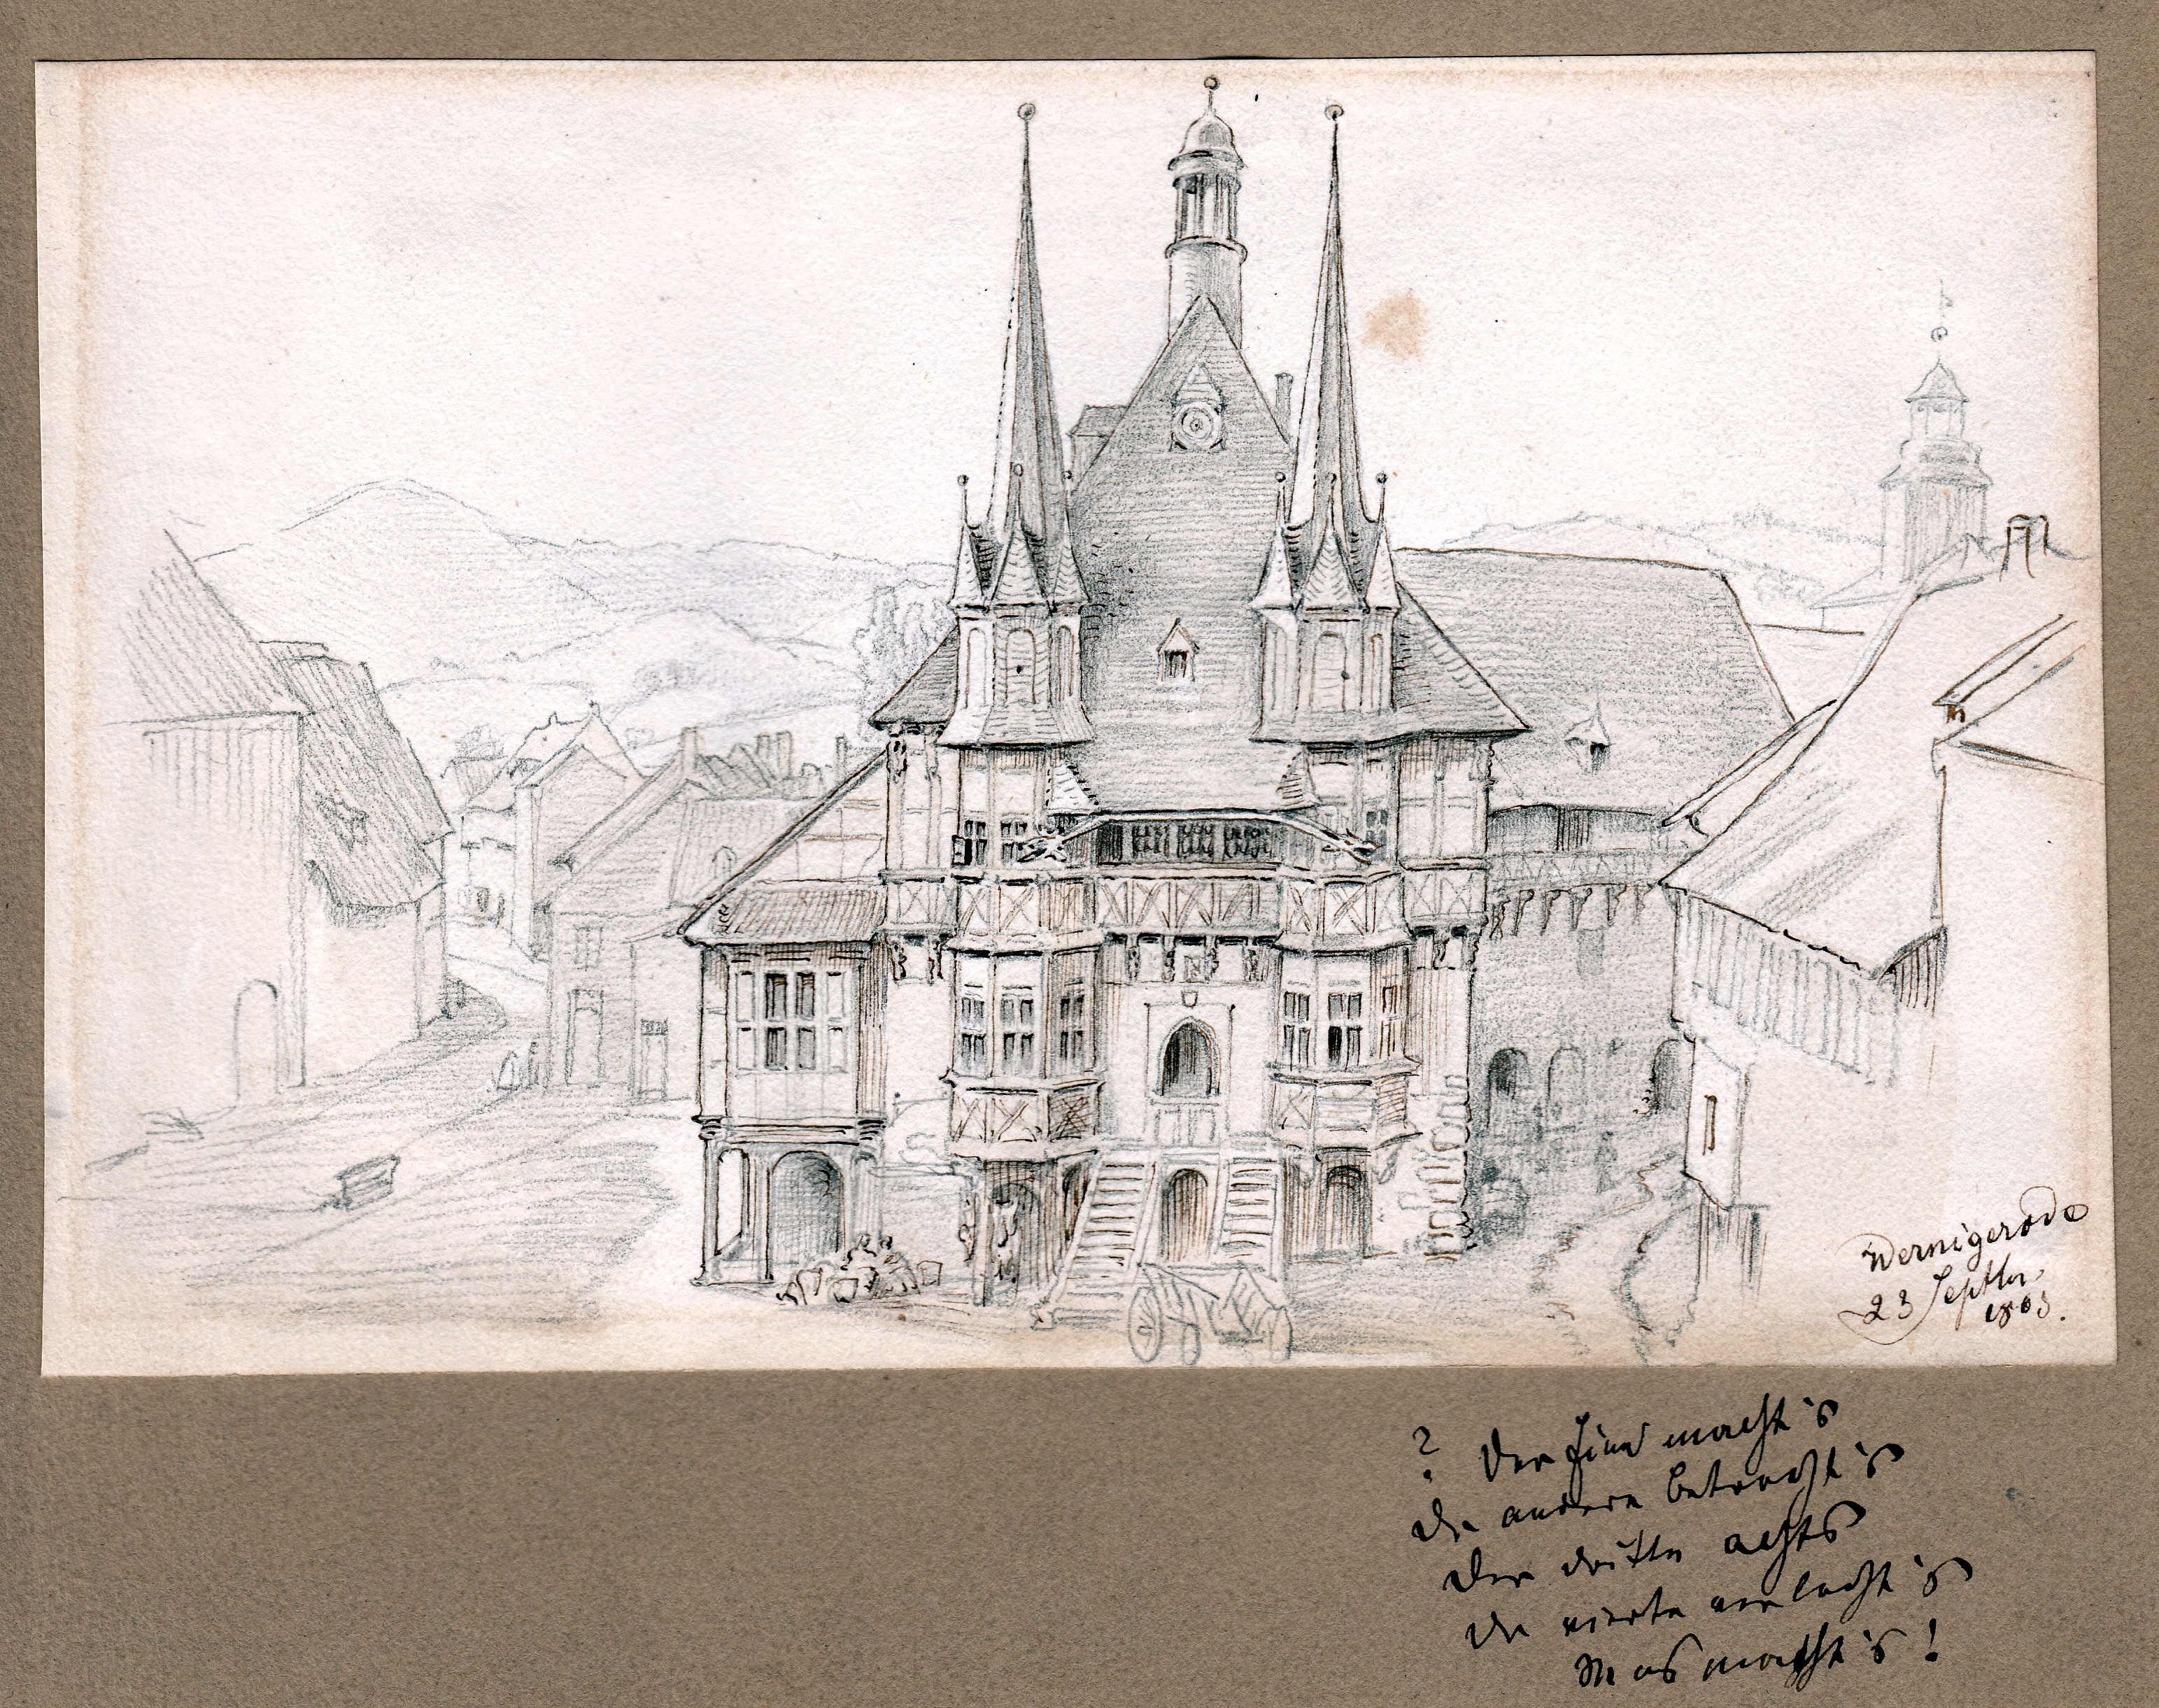 Rathaus in Wernigerode mit der Marktplatzfront 1869, von Carl Christian Andreae (Schloß Wernigerode GmbH RR-F)